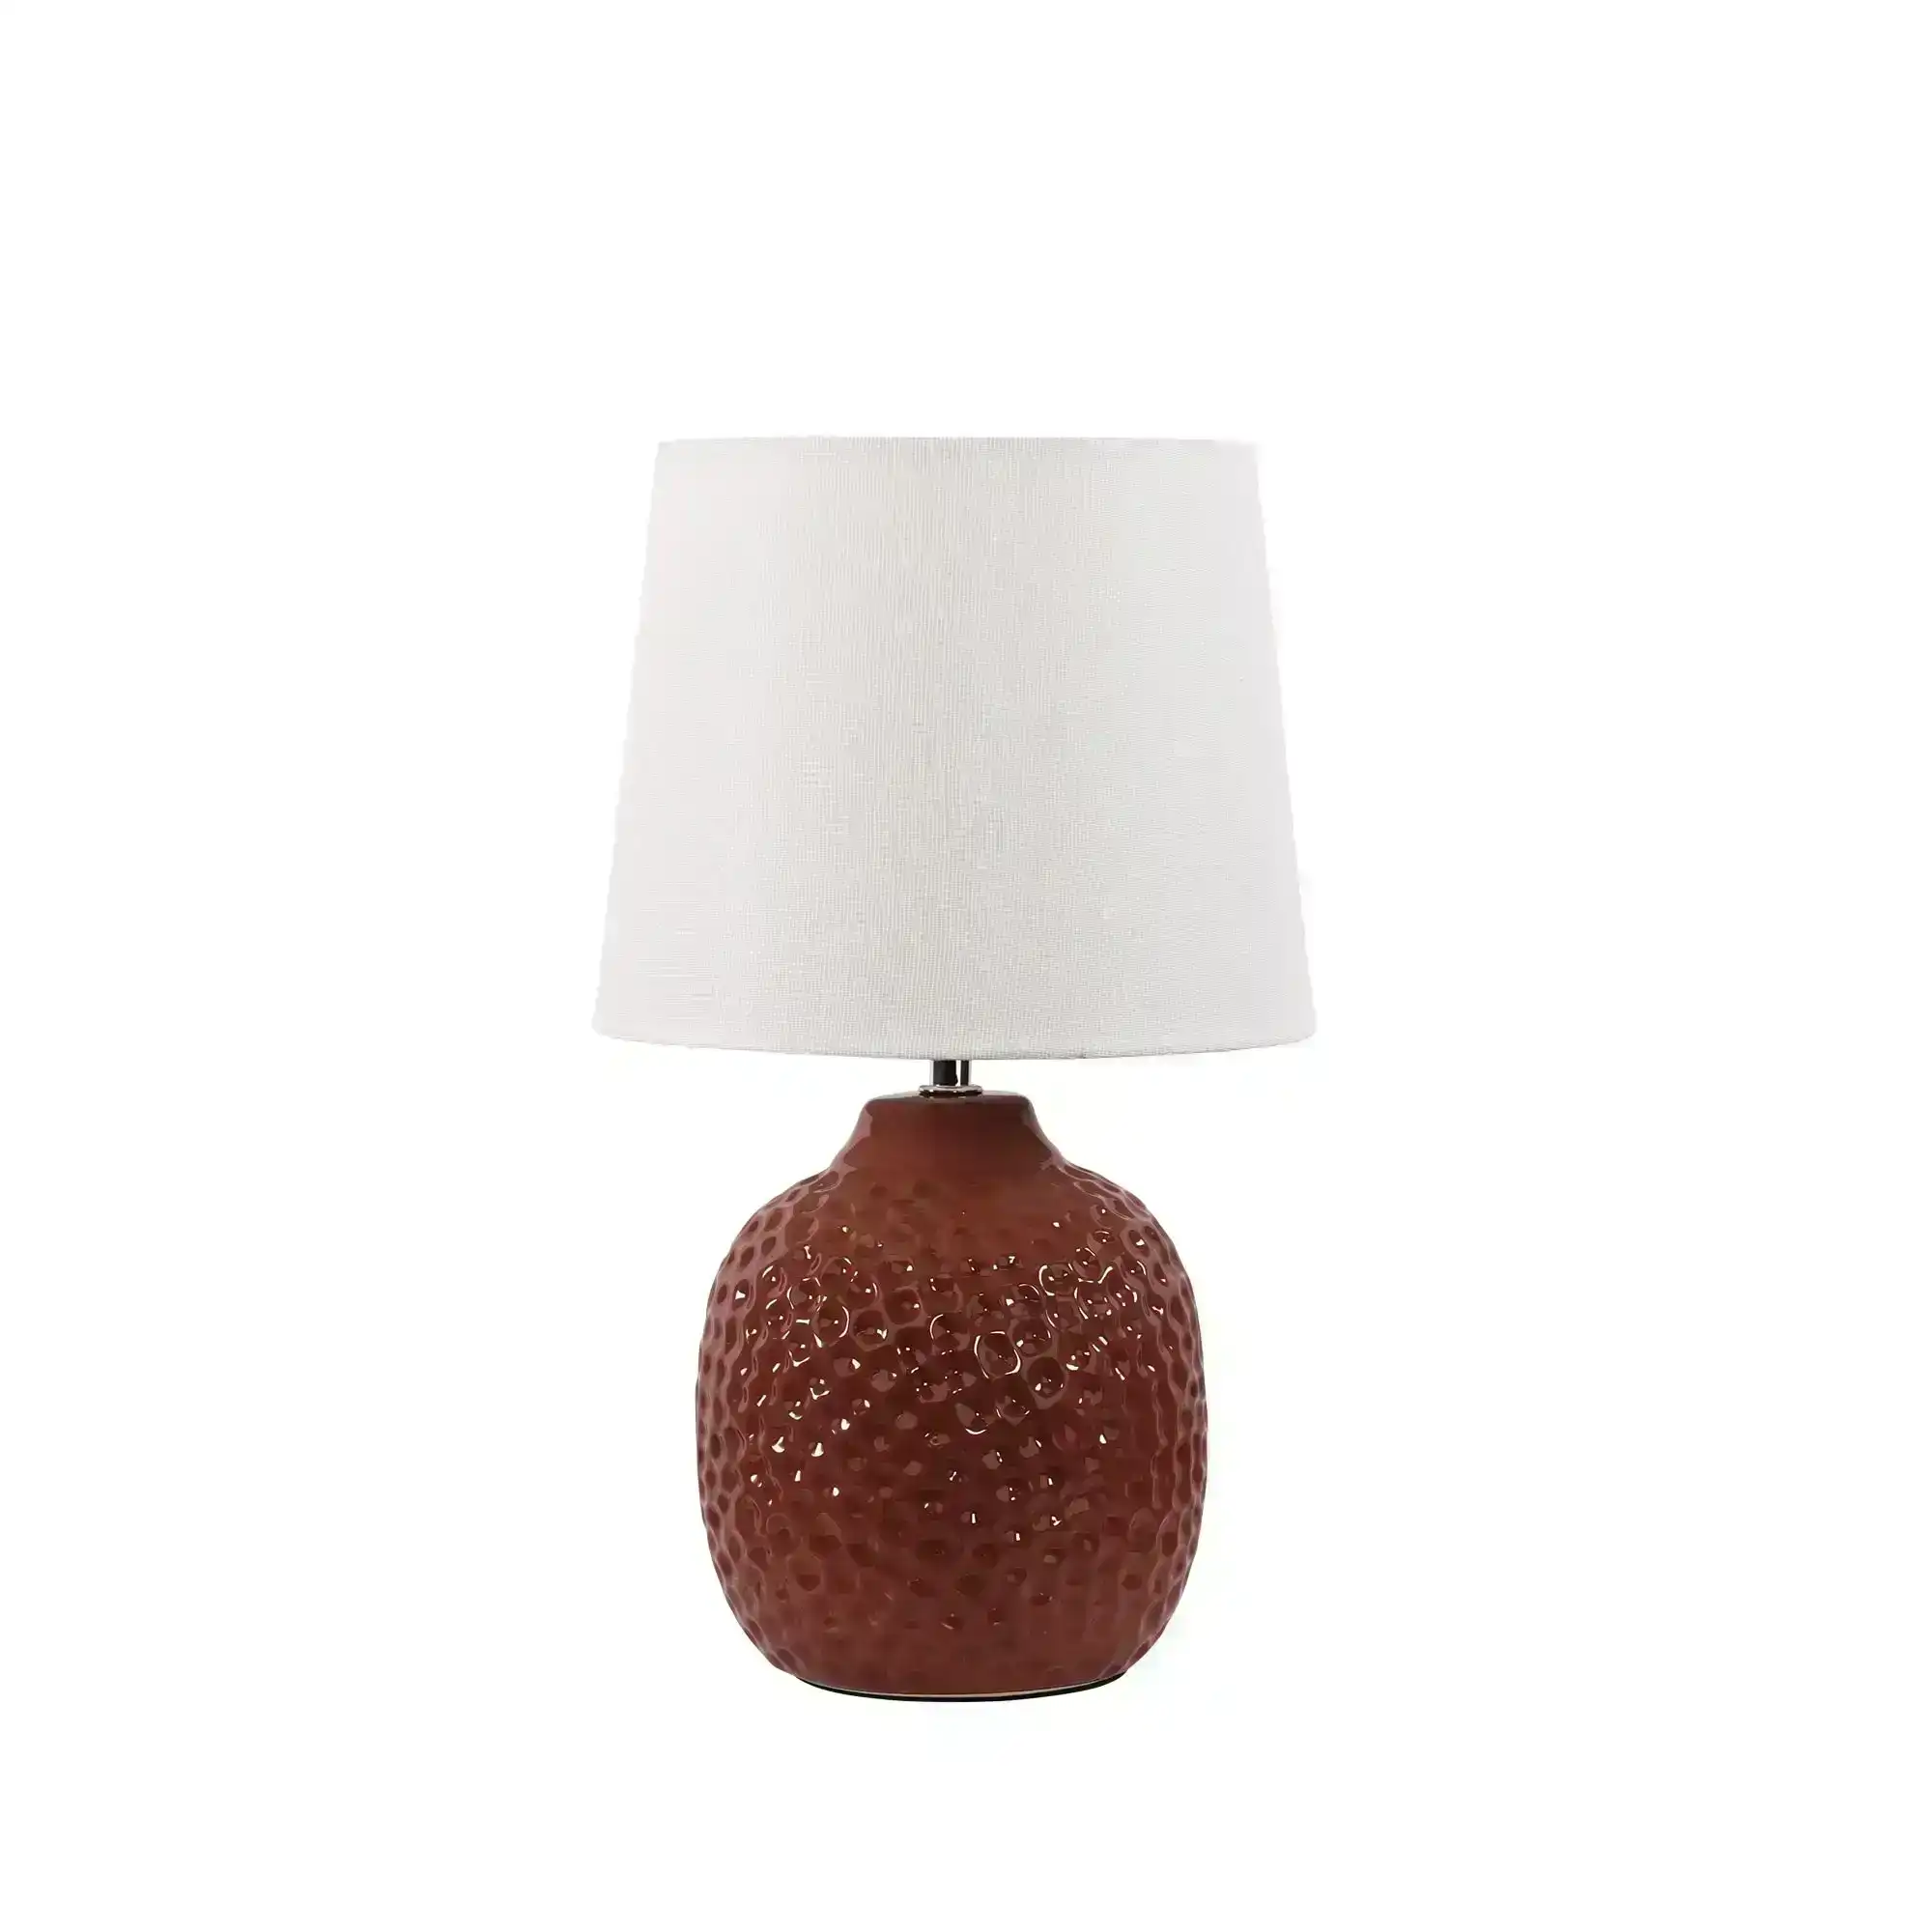 LILIA Ceramic Table Lamp